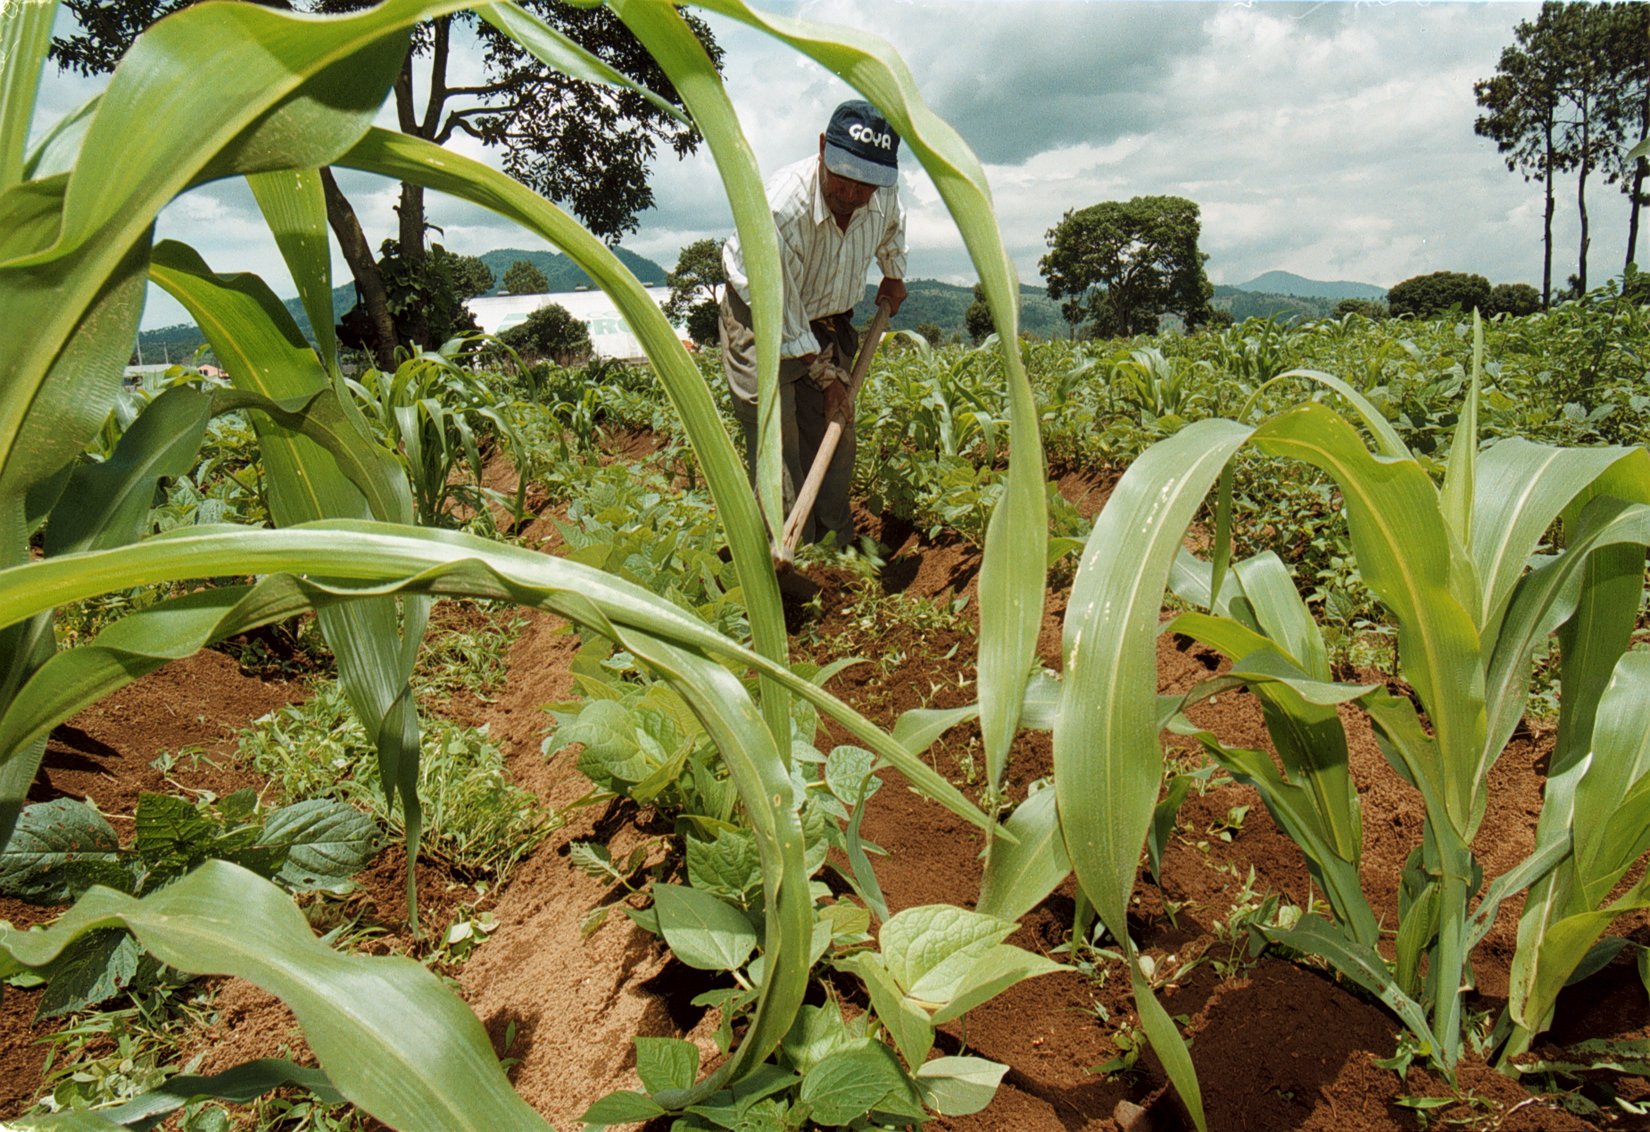 El precio del maíz se incrementó con la pandemia del covid-19, lo que complica la crisis alimentaria que se vive en el país. (Foto Prensa Libre: Hemeroteca PL)